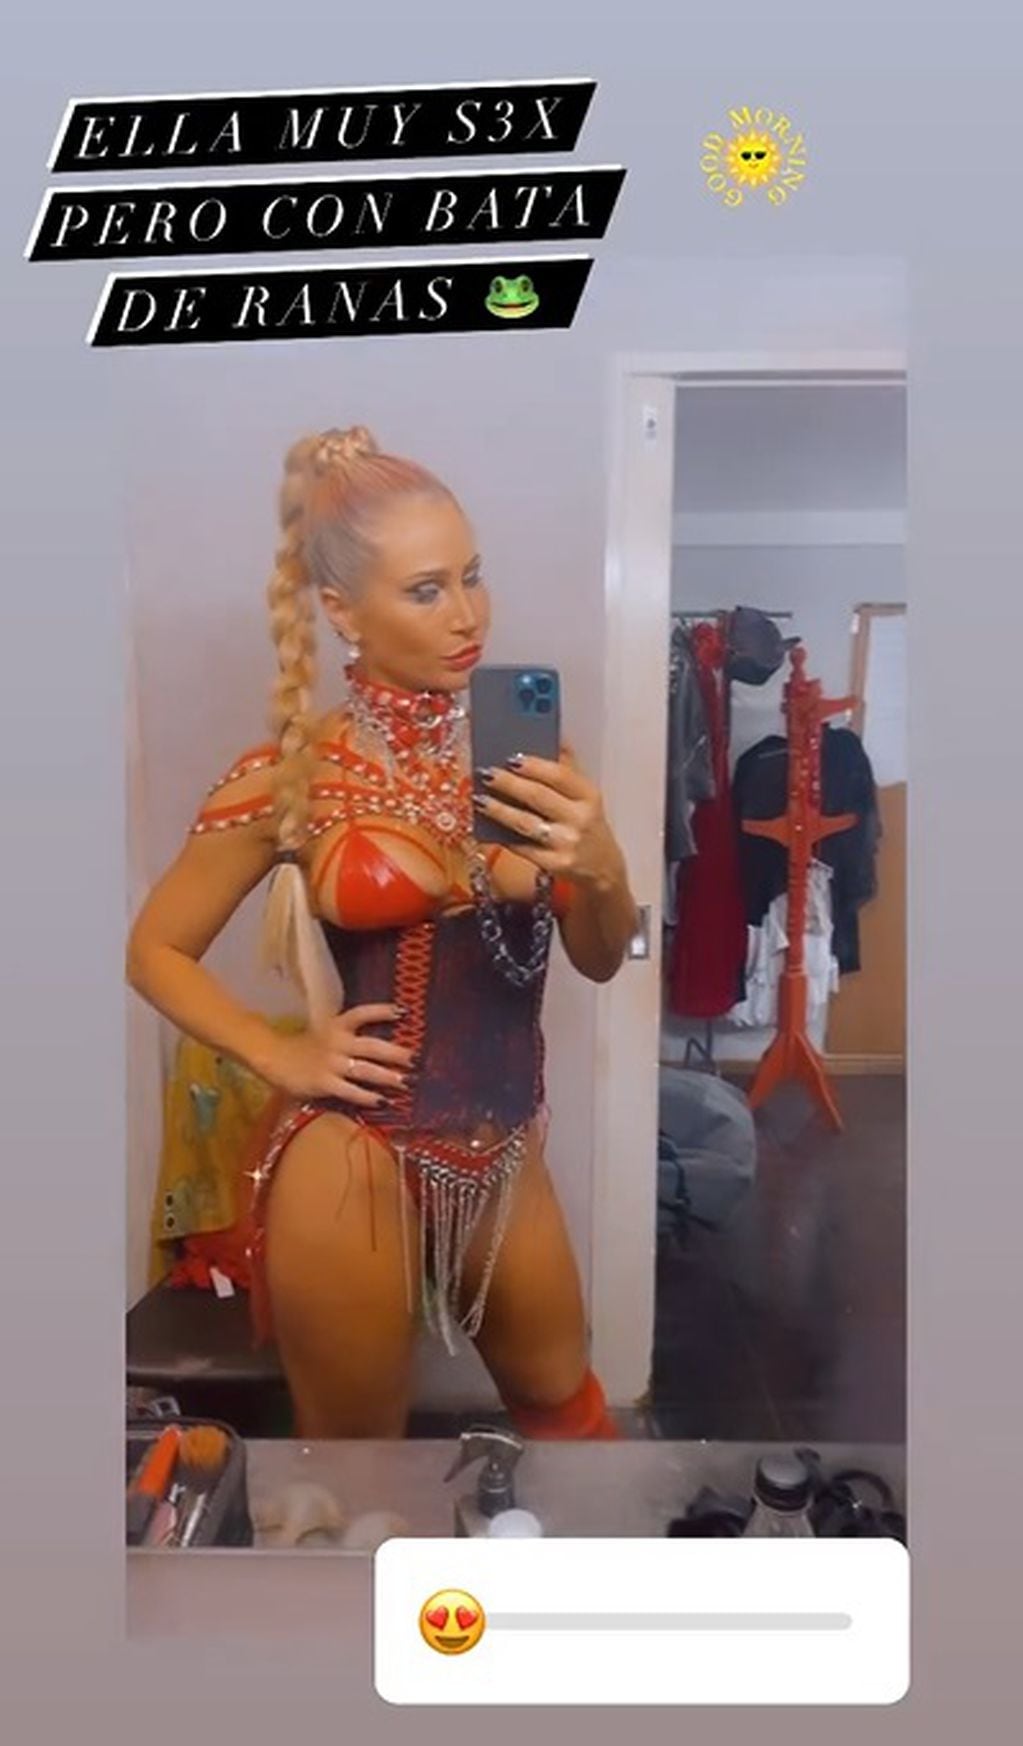 La bailarina sorprendió al mostrarse con el sensual outfit que usa en la obra de José María Muscari / Foto: Instagram